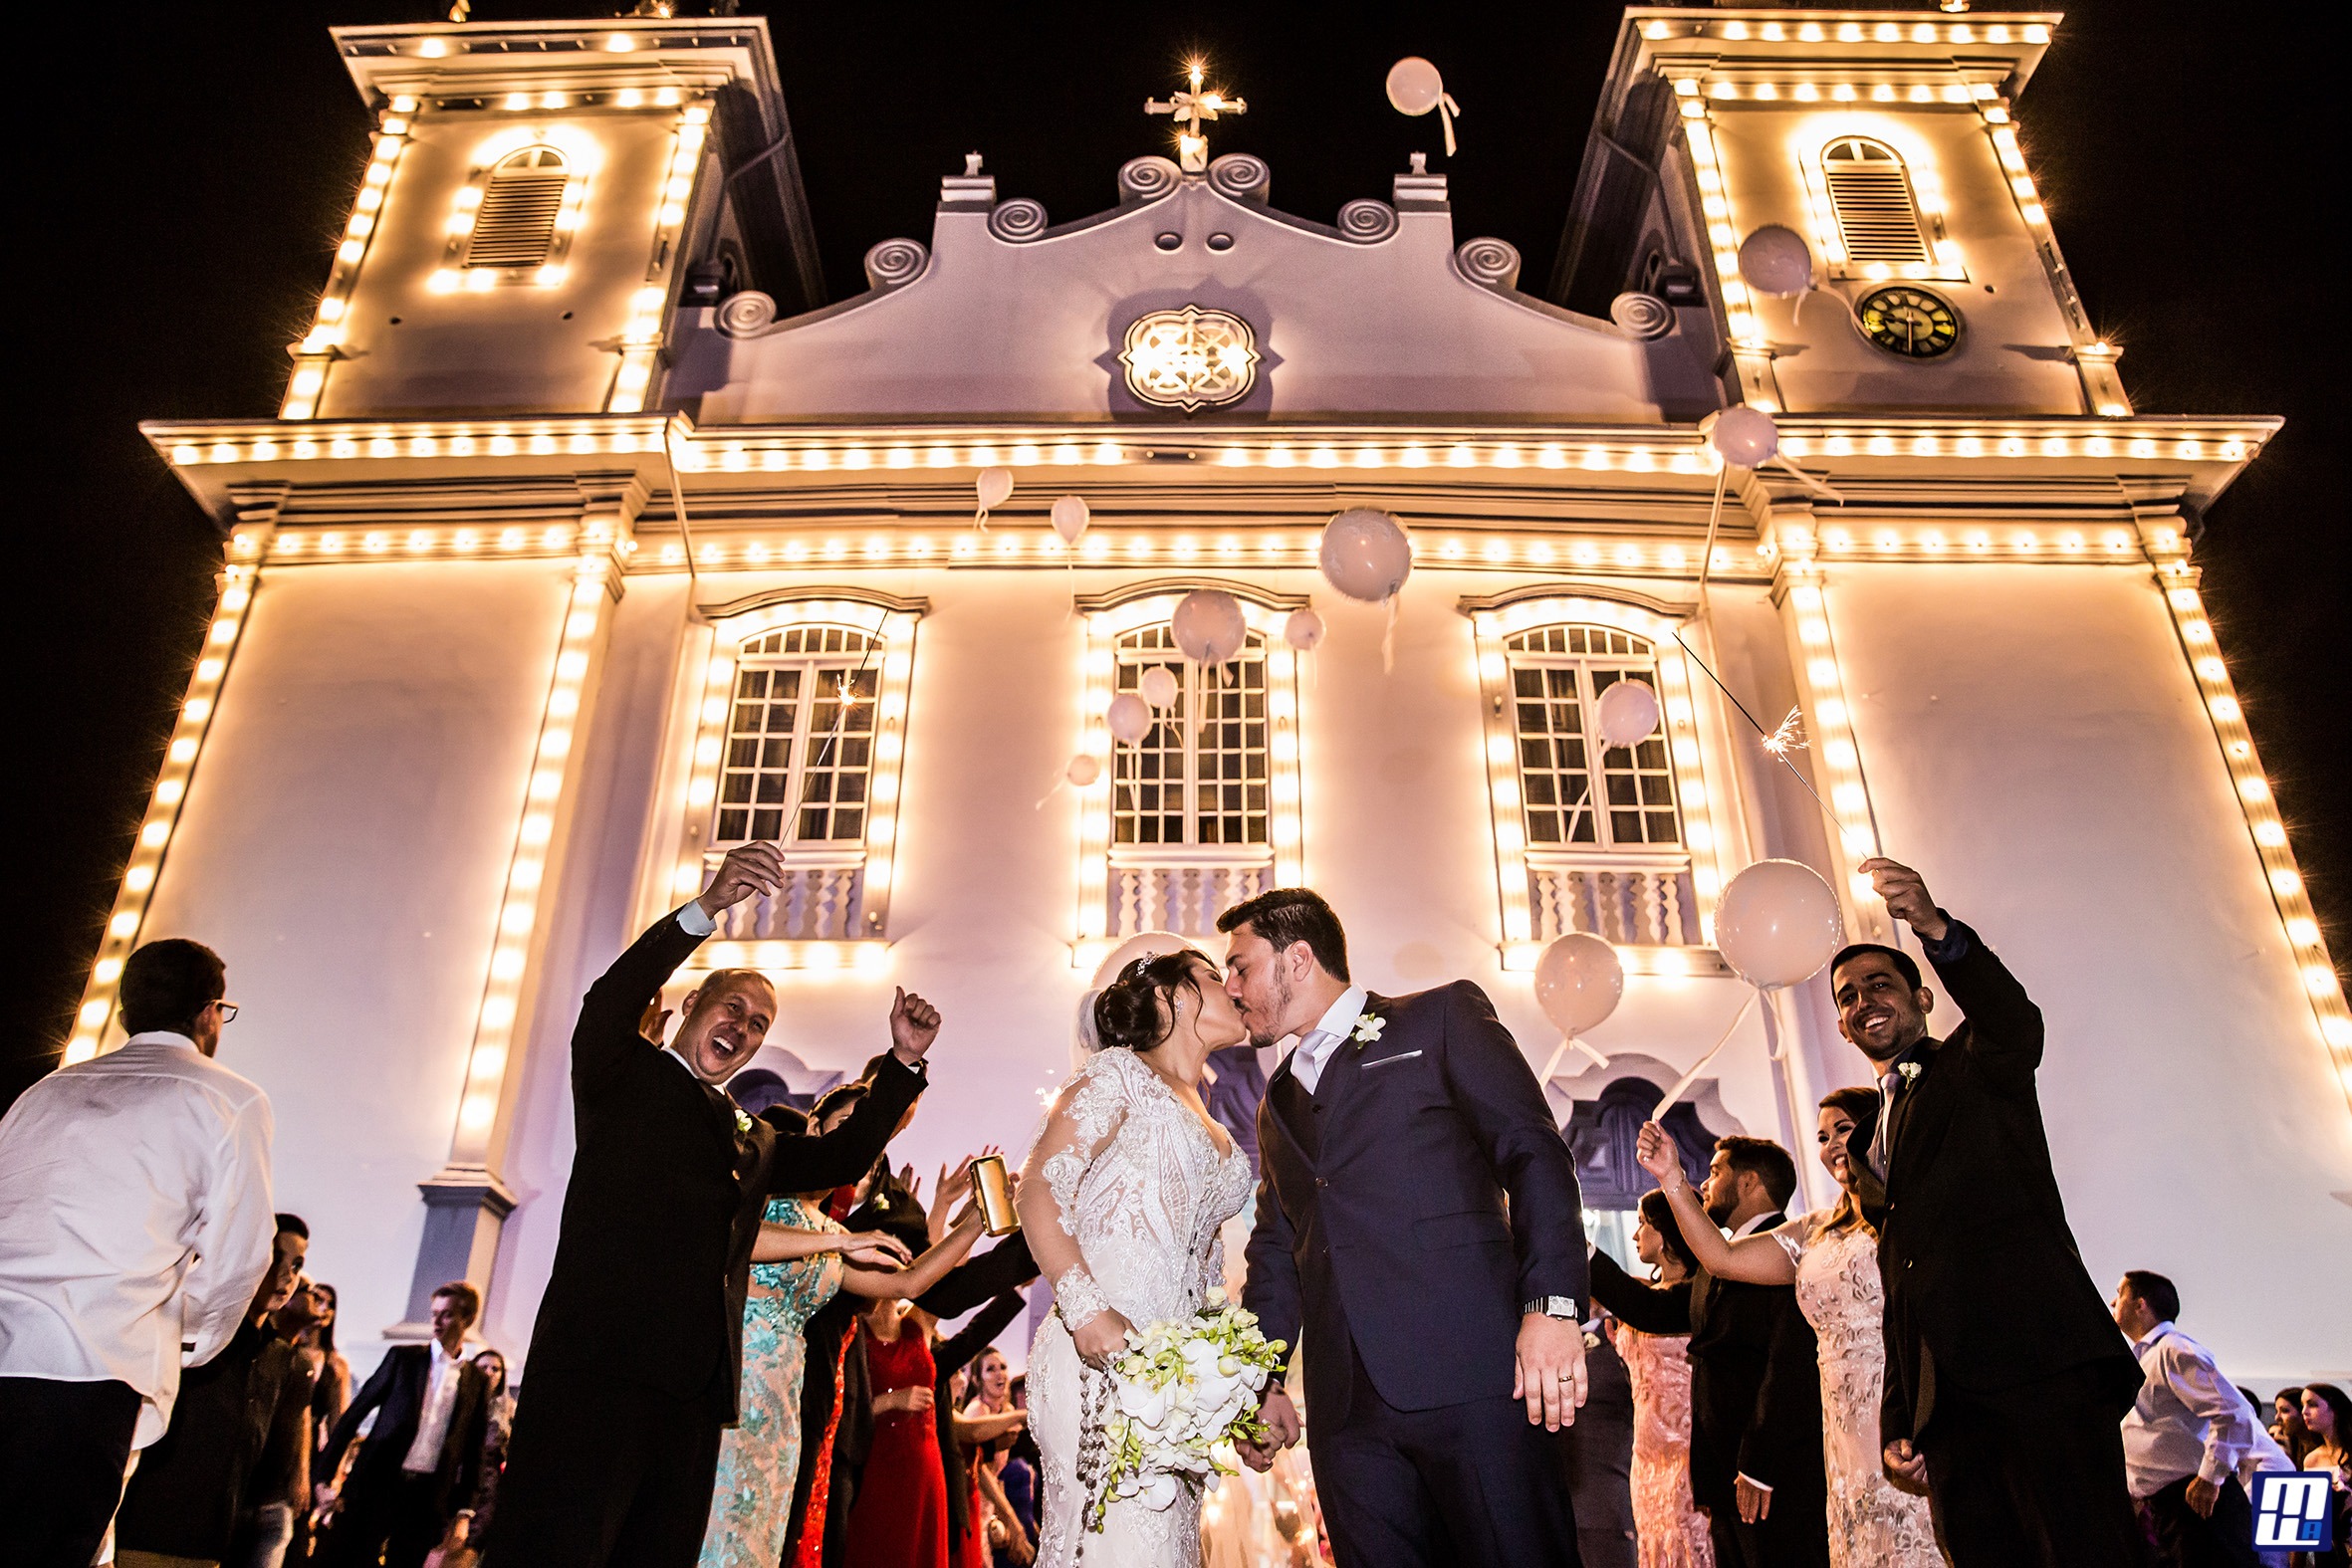 Casamento em Formiga - Riquelme e Felipe - Zephora Alta Costura - Foto Marcelo Faria